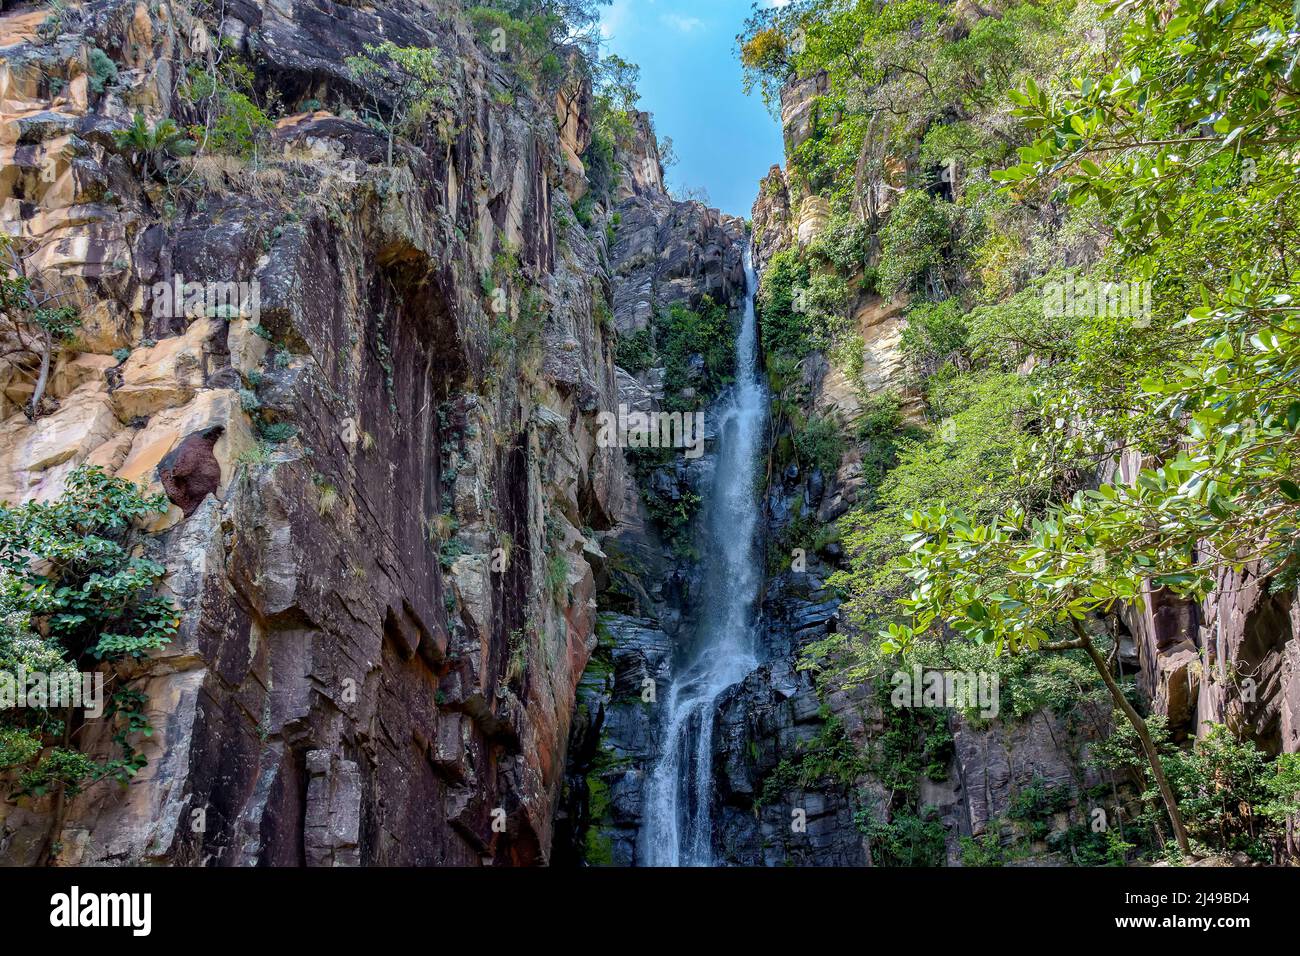 Hermosa cascada entre las rocas en la ladera de una montaña en la región Serra do CIPO del bioma brasileño Cerrado (sabana) en Minas Gerais Foto de stock